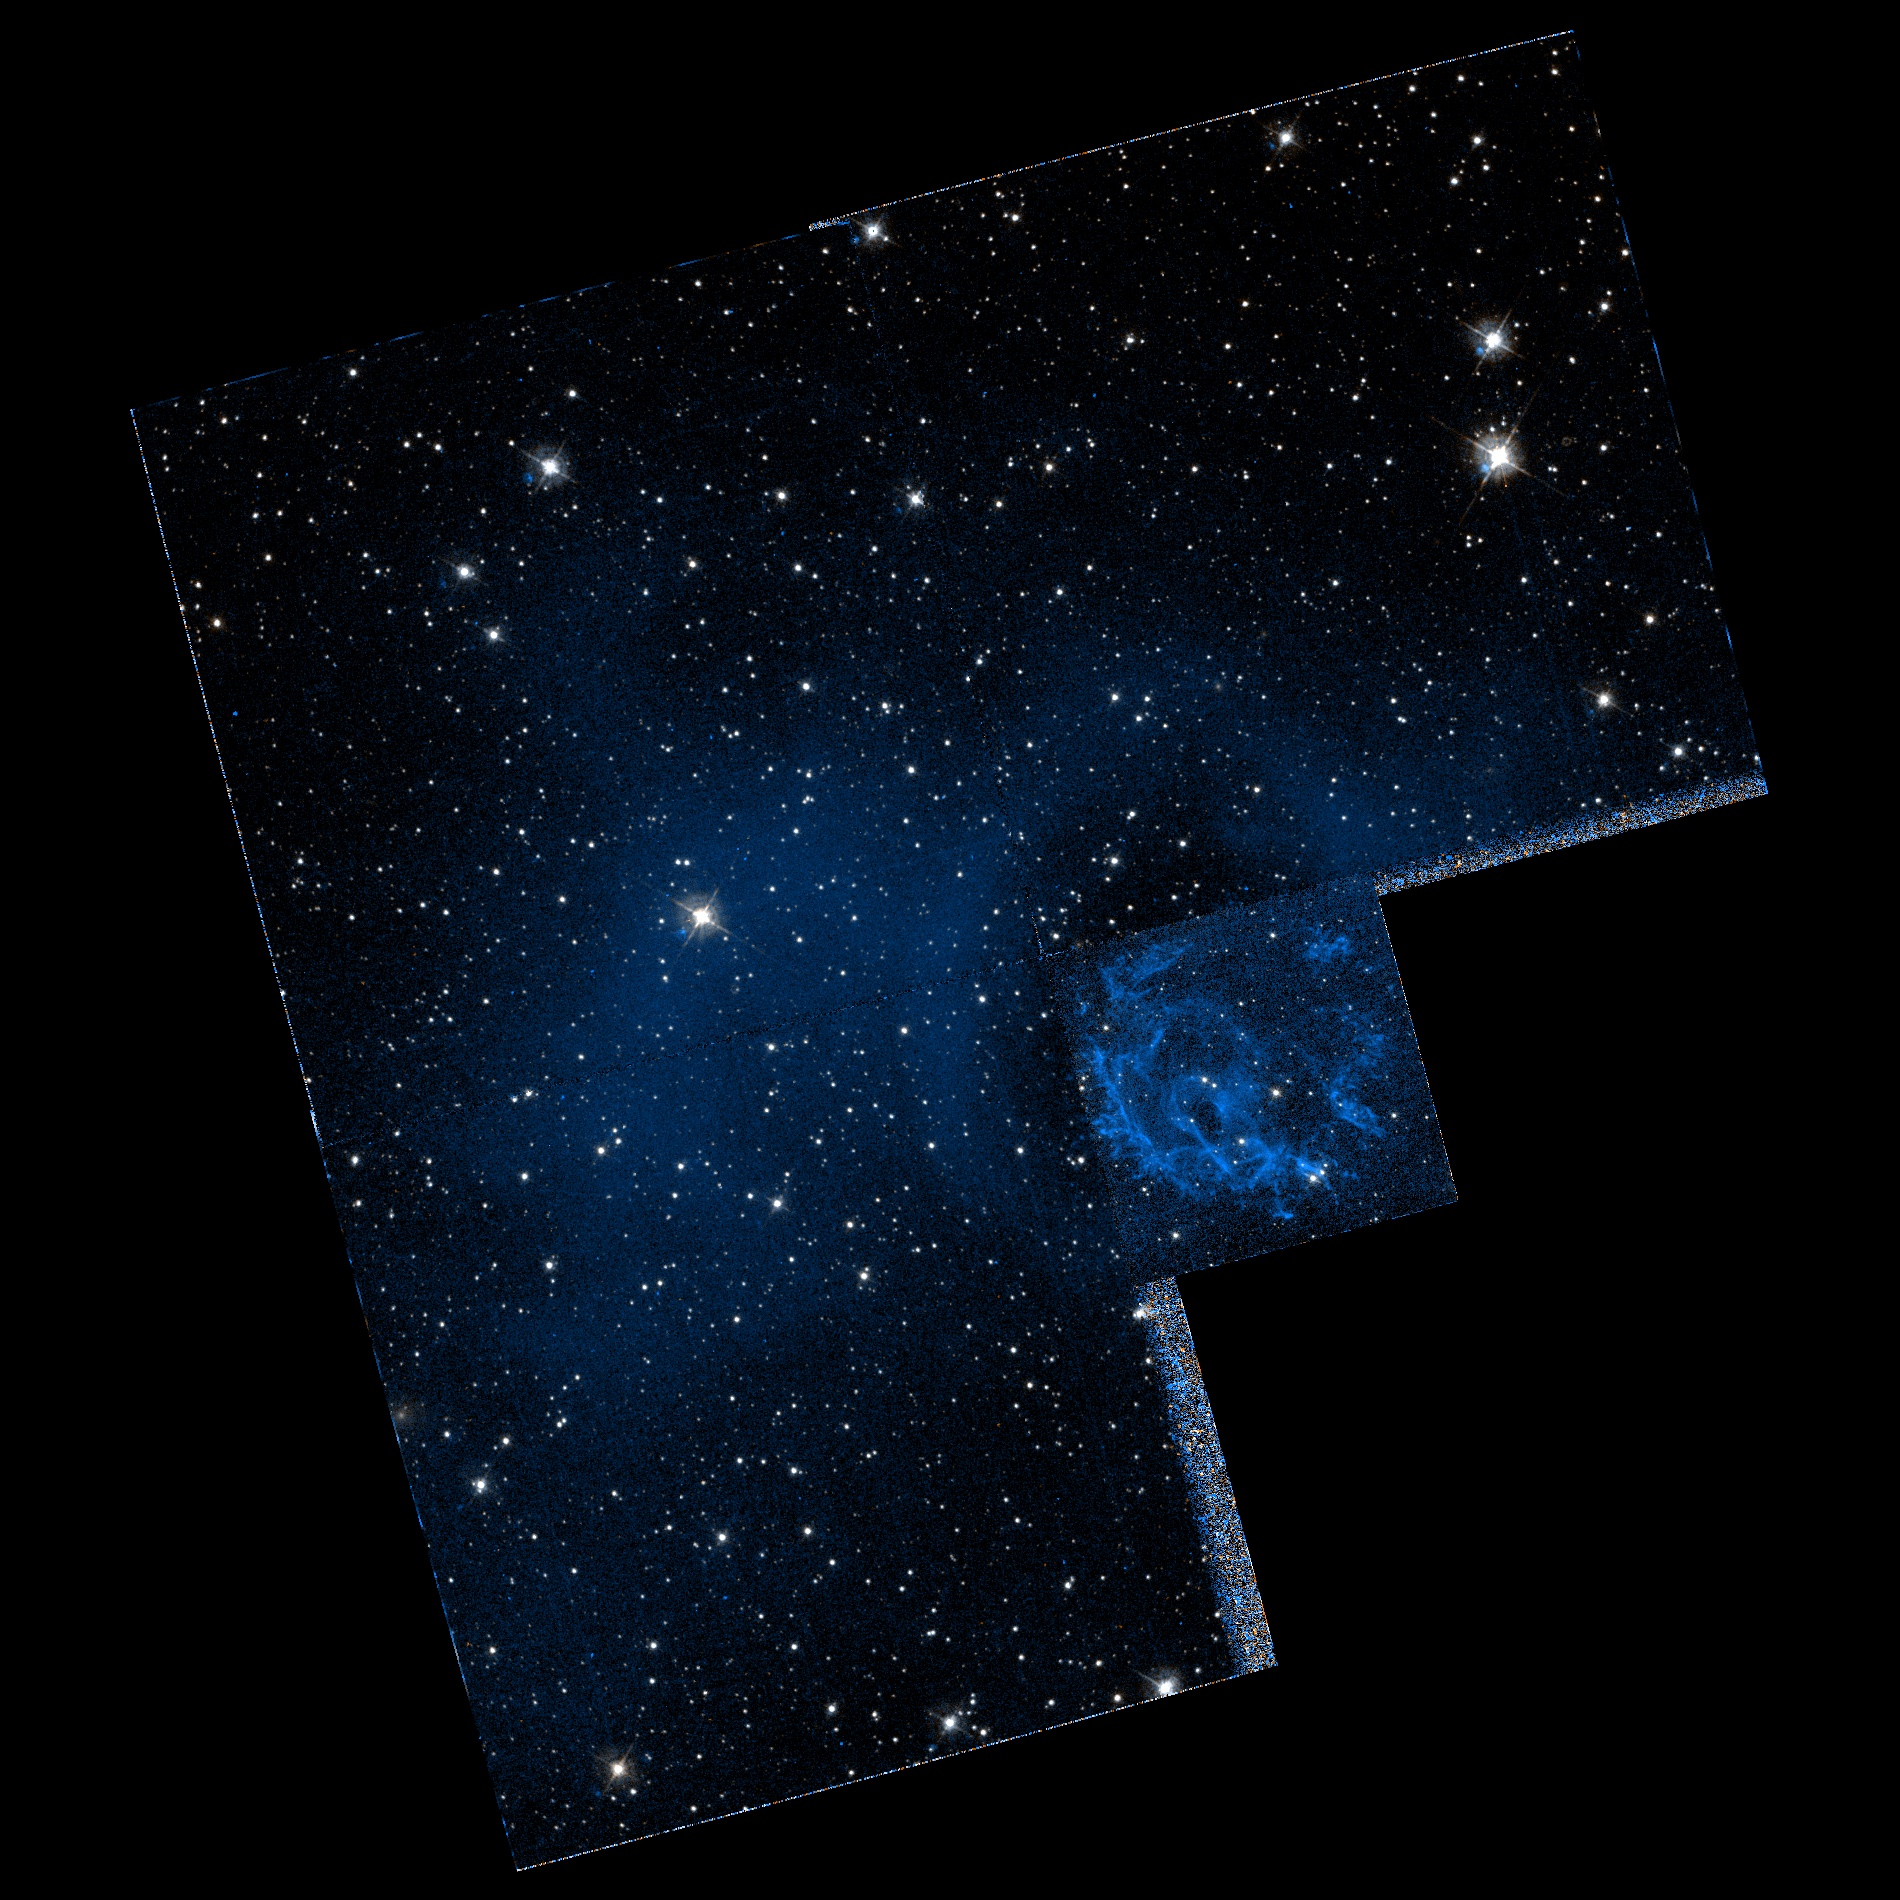 Созвездие тукан. Малое Магелланово облако Созвездие тукана. Созвездие Тукан со звездами. Тукан астеризм.